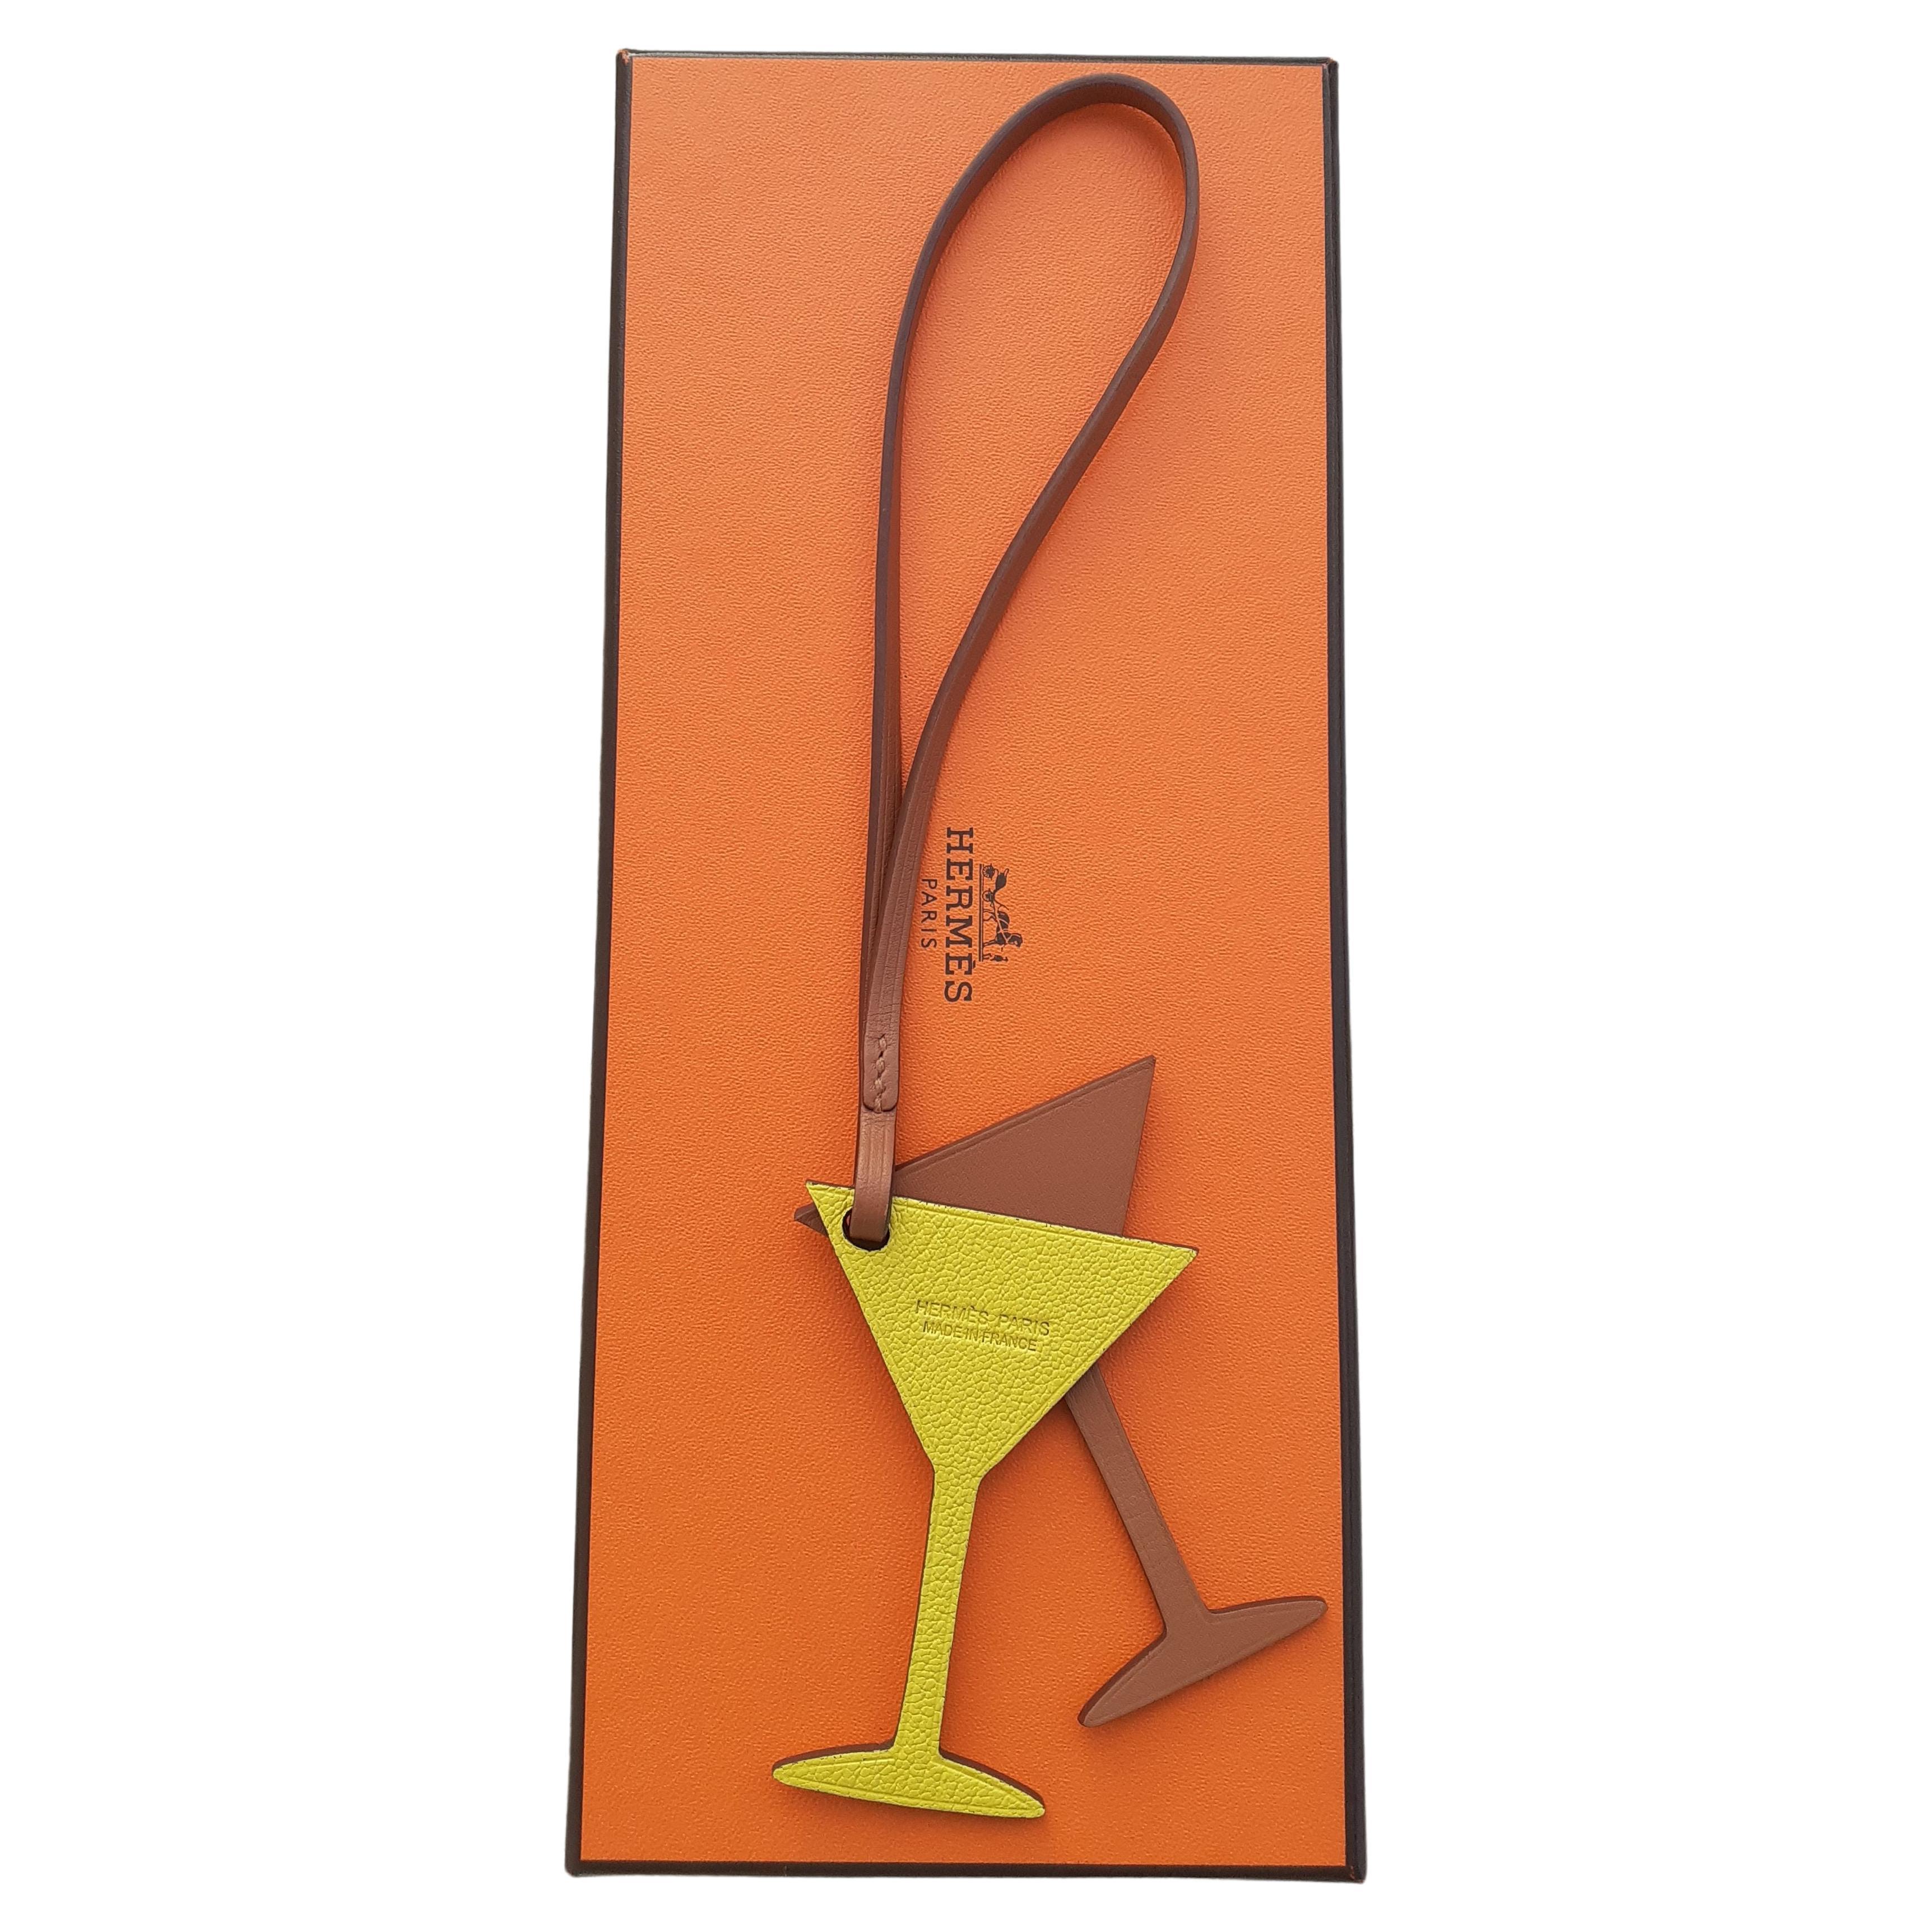 Seltener authentischer Hermès Charme

In Form von 2 Cocktailgläsern

Hergestellt aus Mauersegler und Ziegenleder

Farbvarianten: Gelb / Braun

